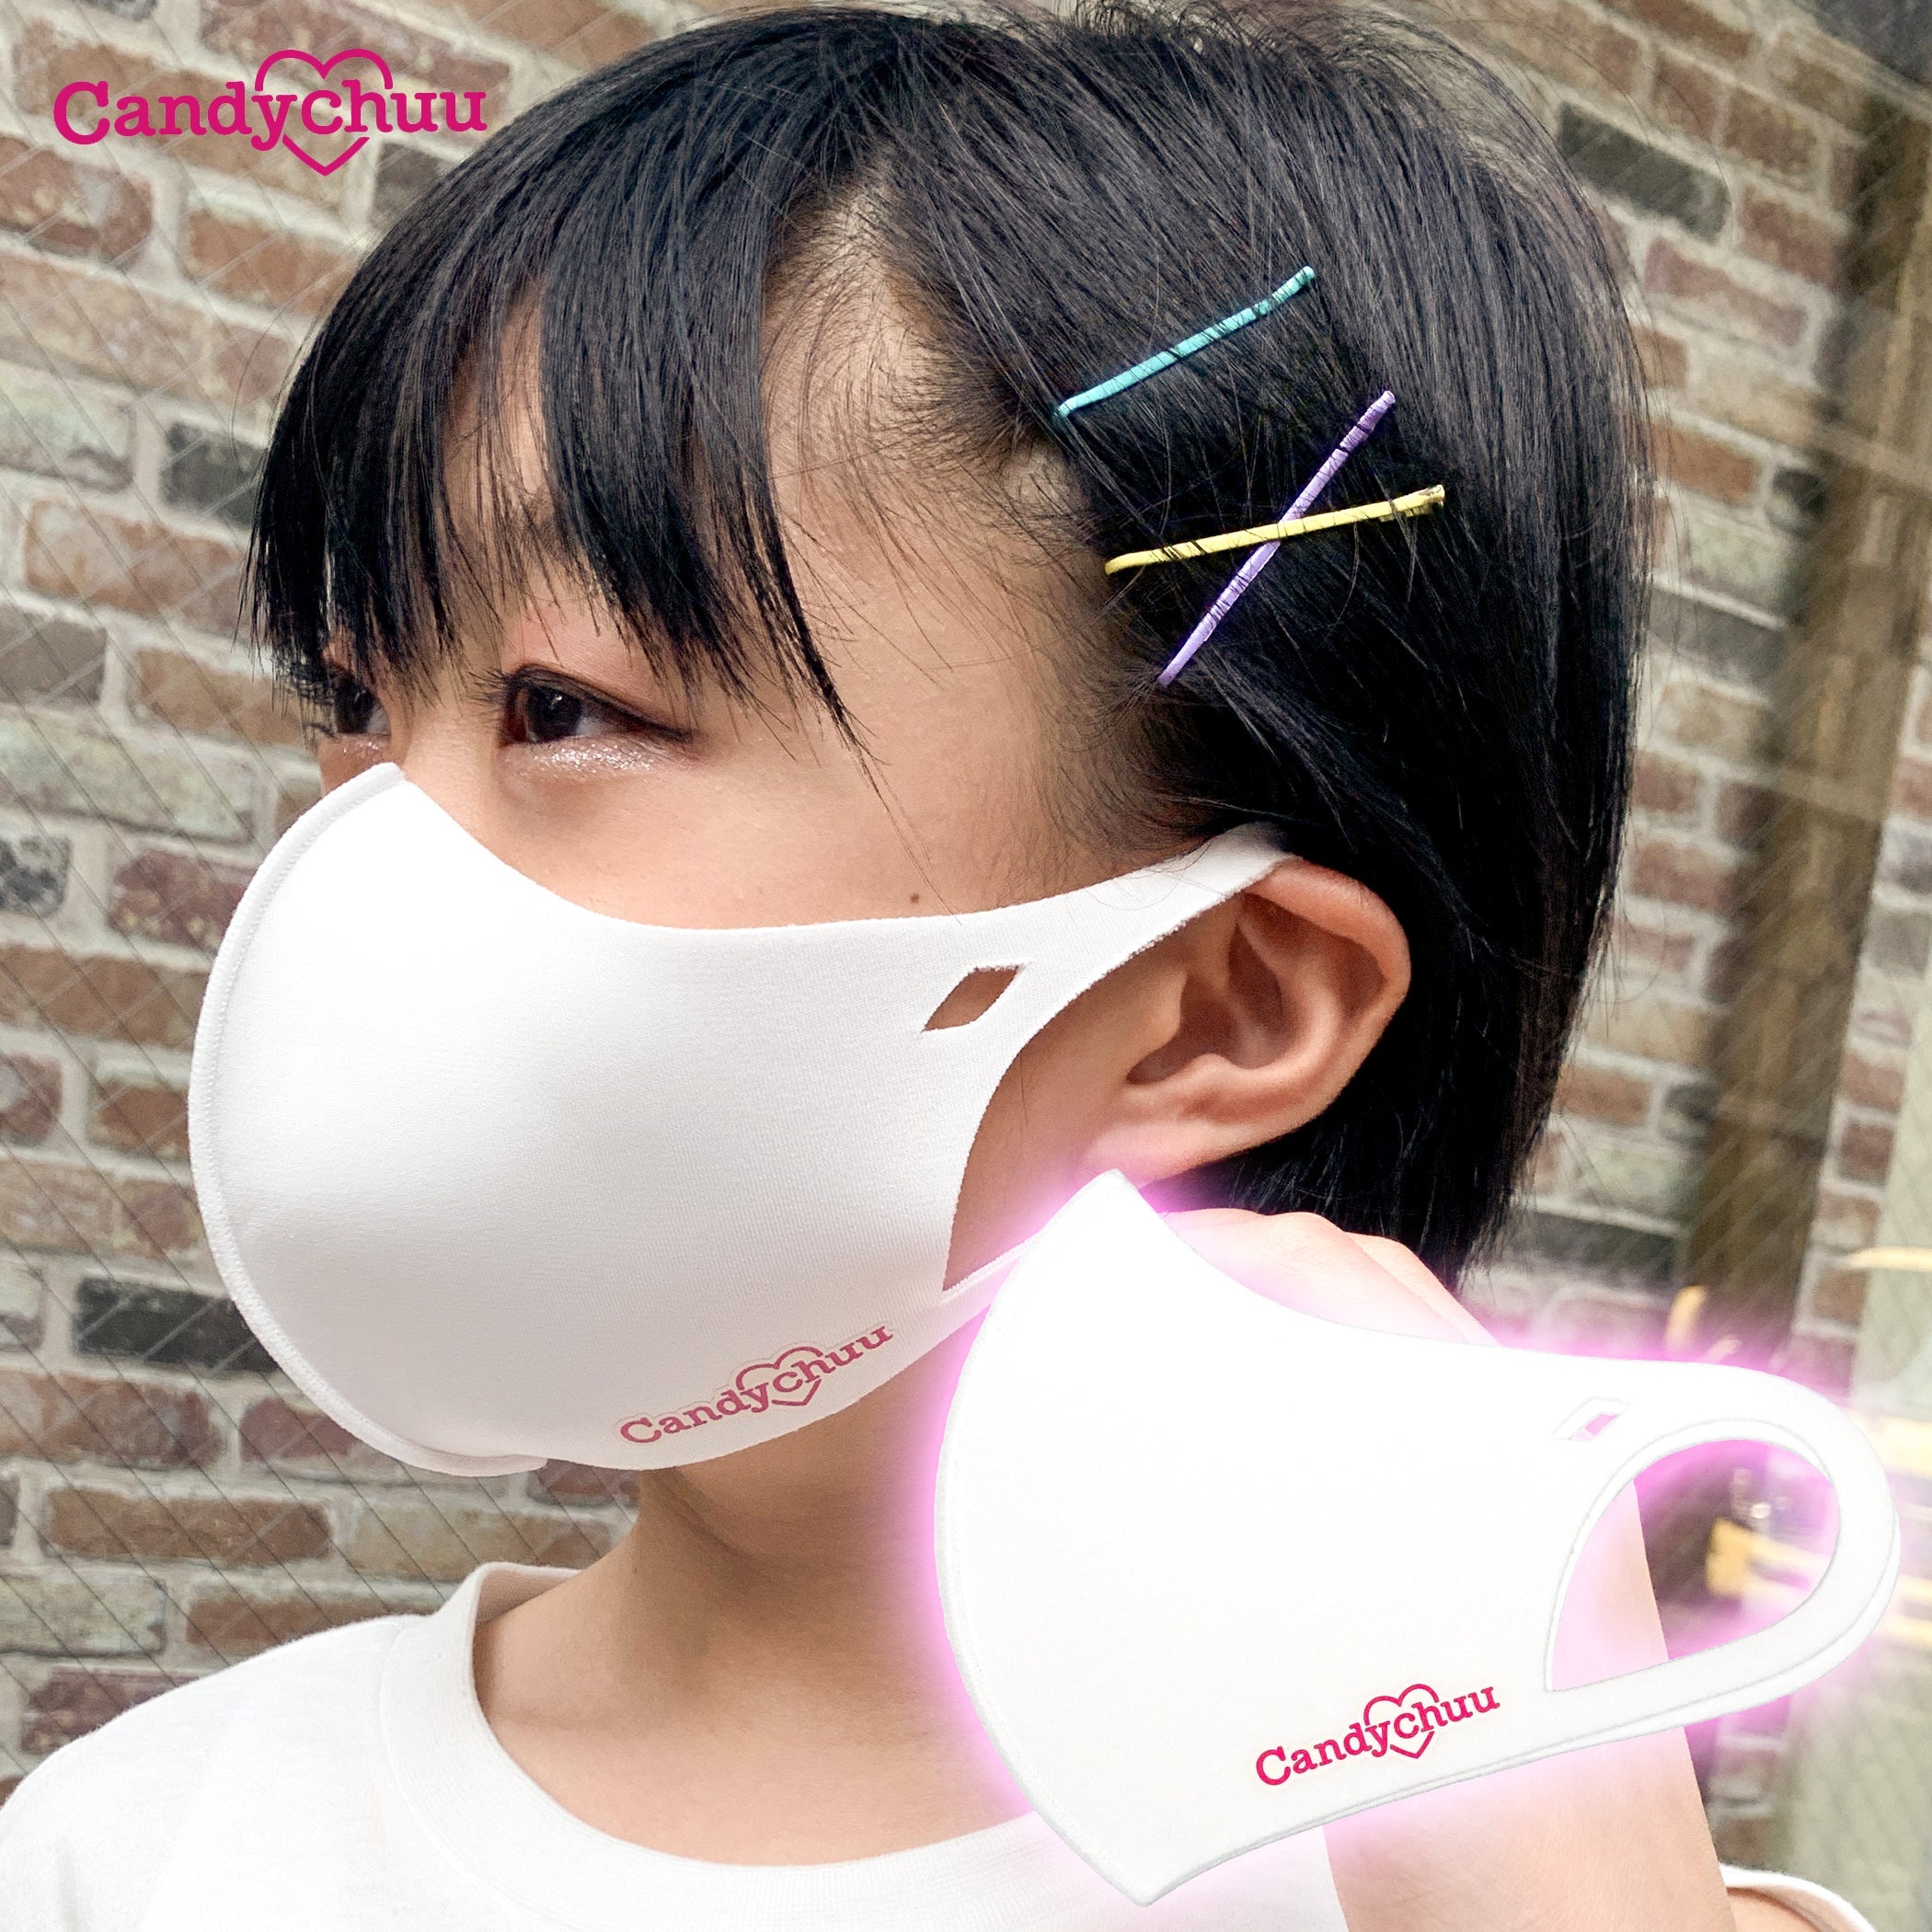 Candychuu ホワイト ロゴ マスク (20055201)